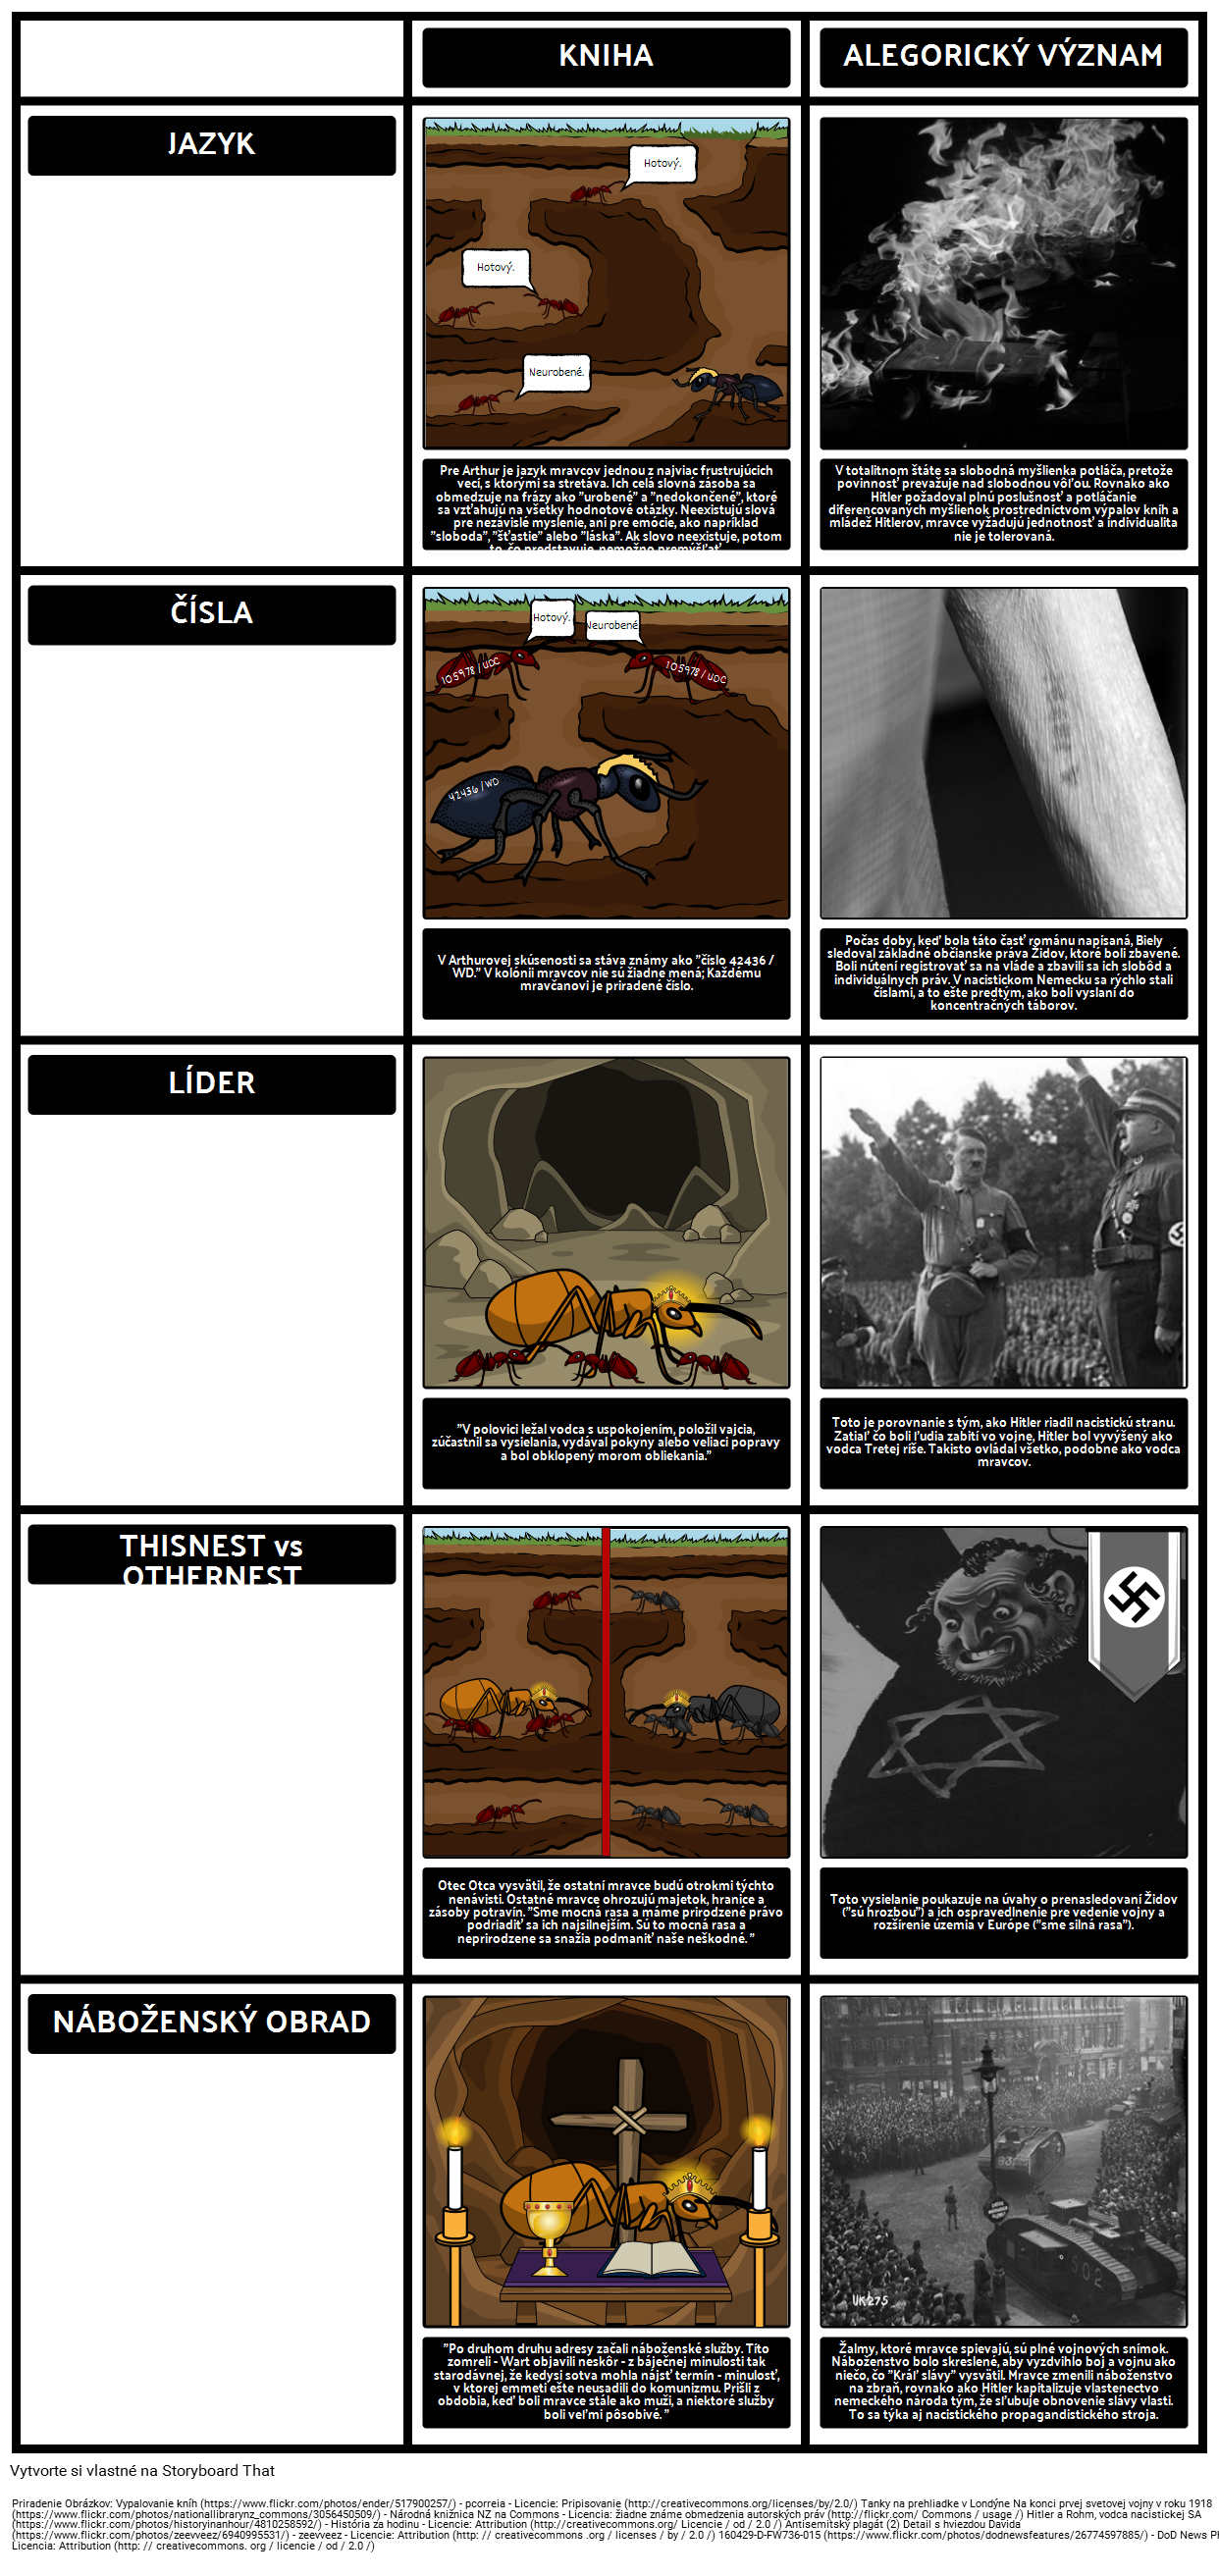 TOAFK - Alegorie v lekcii mravcov v "Meči v kameňu"